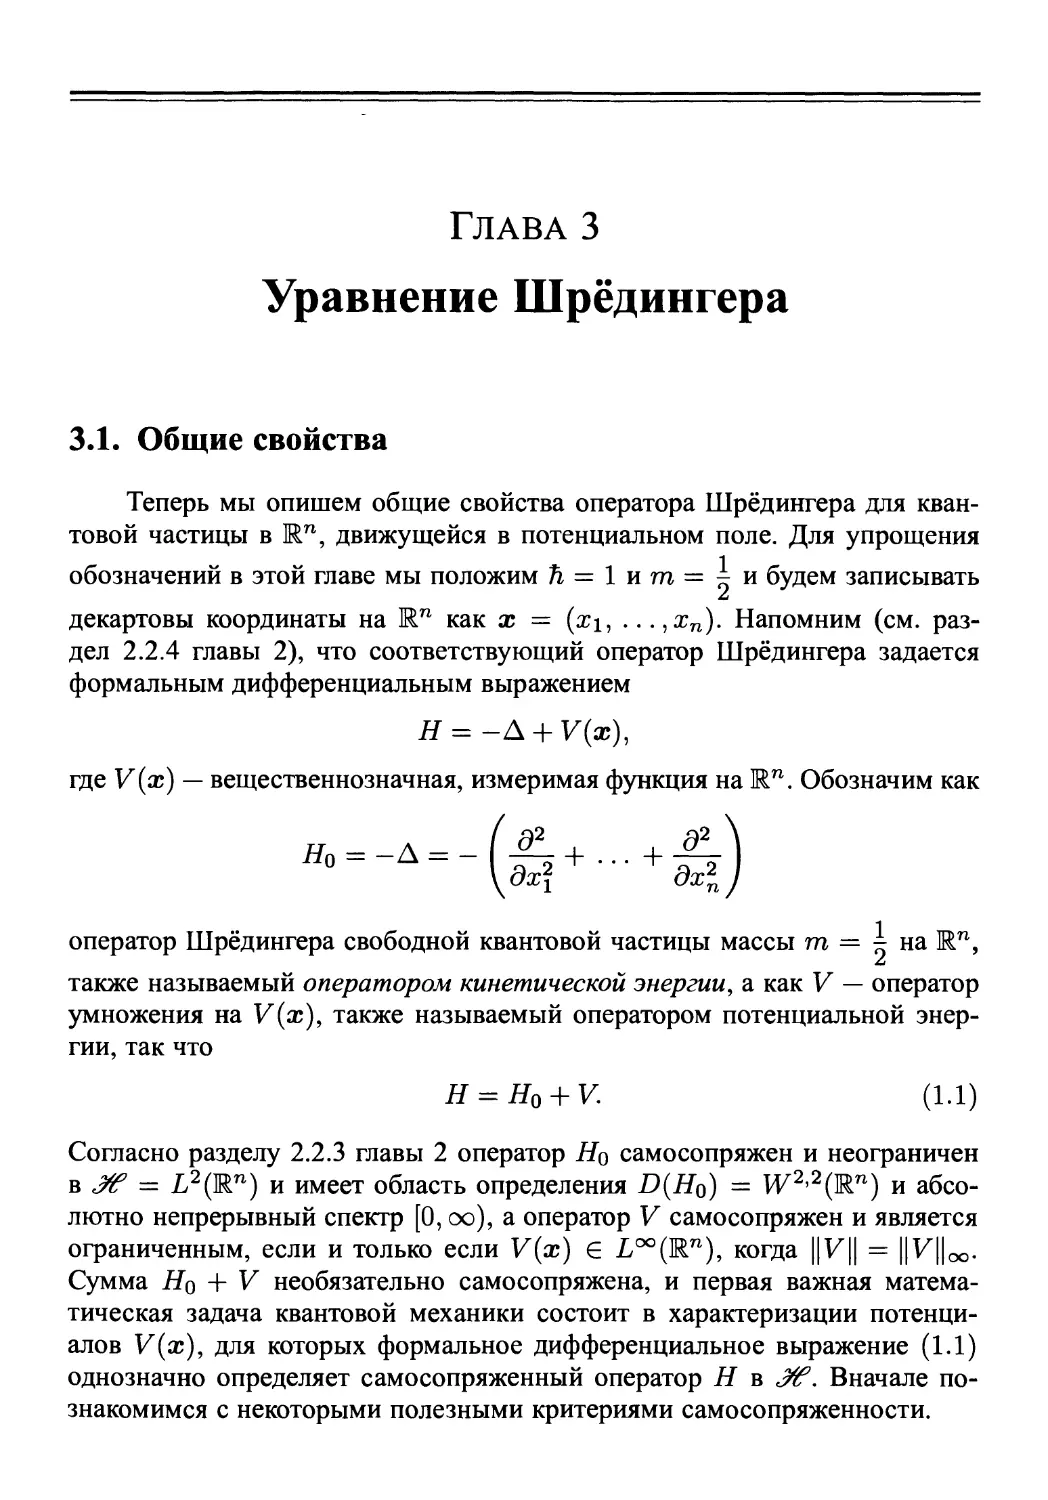 Глава 3. Уравнение Шрёдингера
3.1. Общие свойства